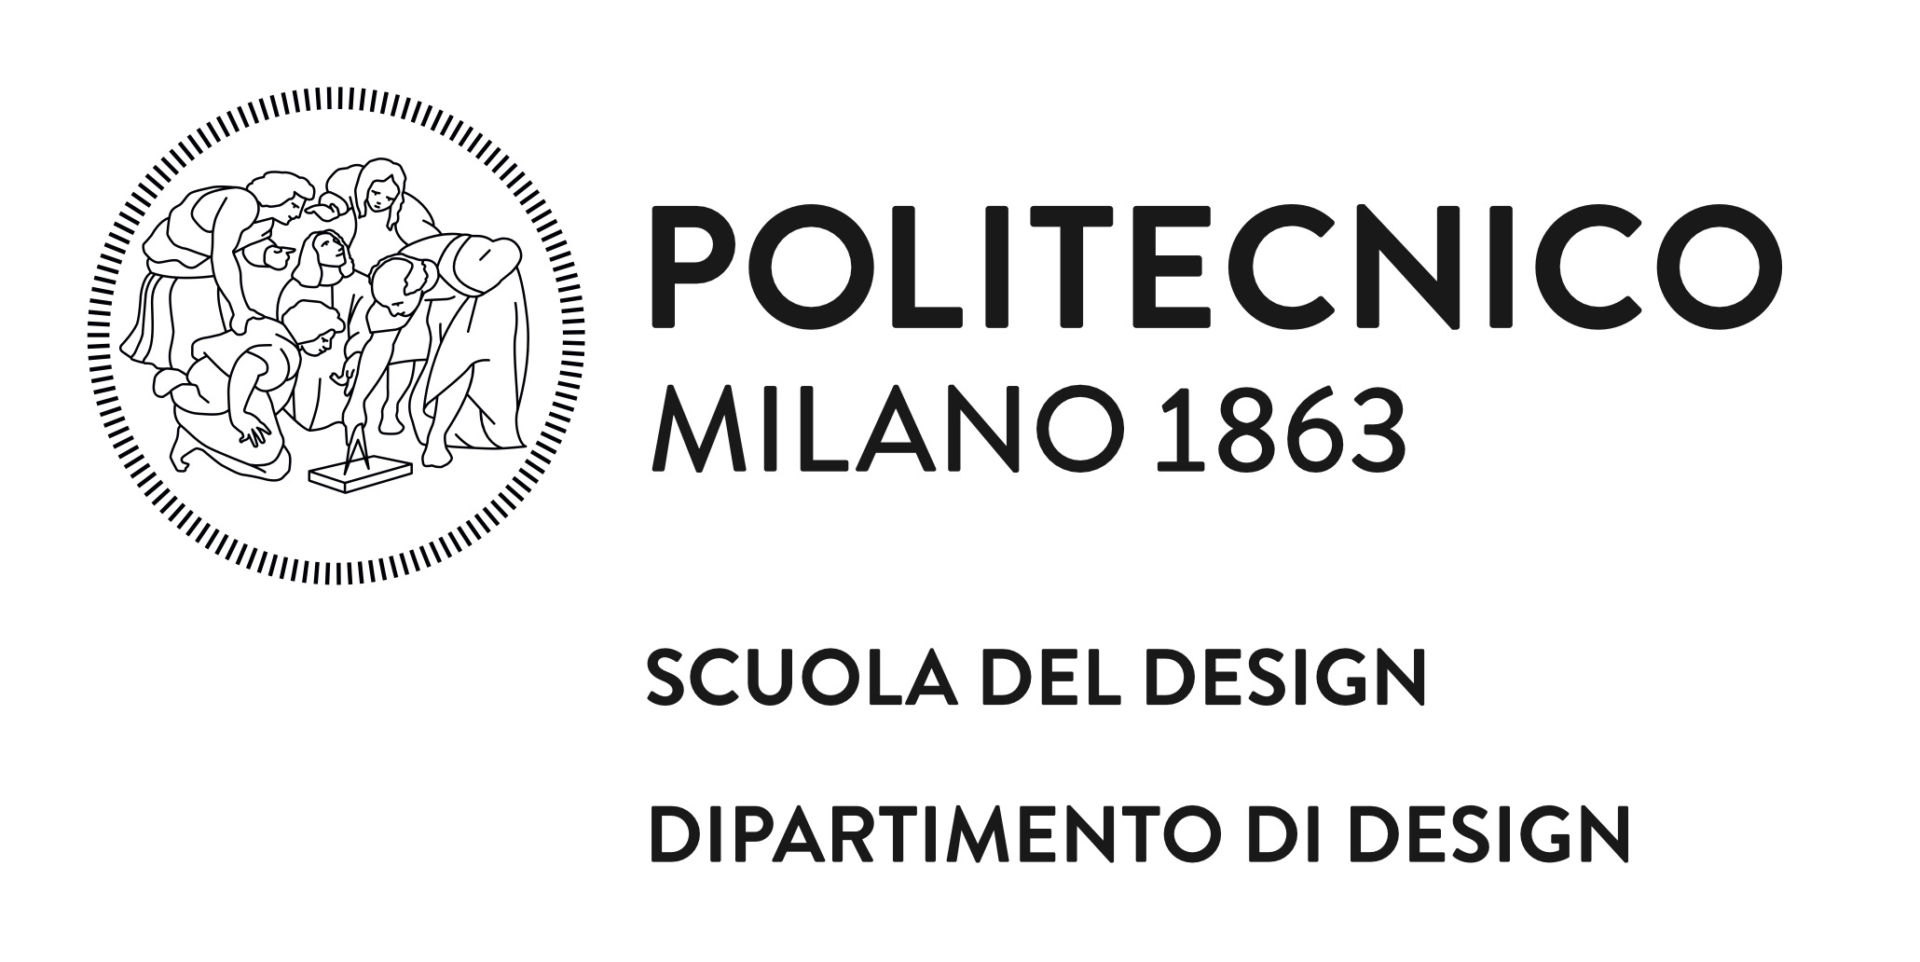 LOGO POLITECNICO MILANO - SCUOLA DEL DESIGN